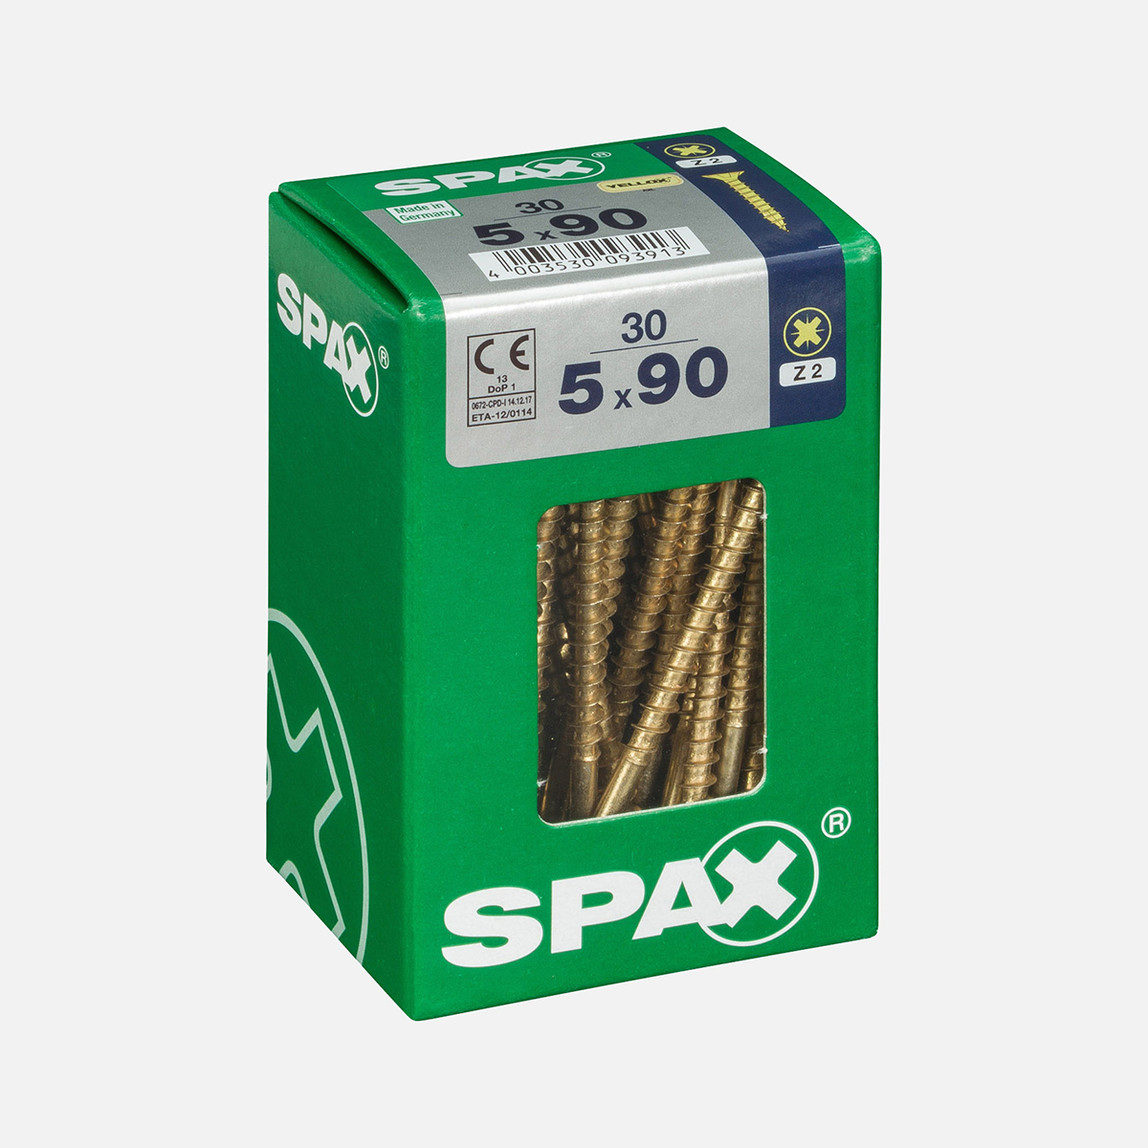    SPAX Havşa Vida Sarı 5X90       